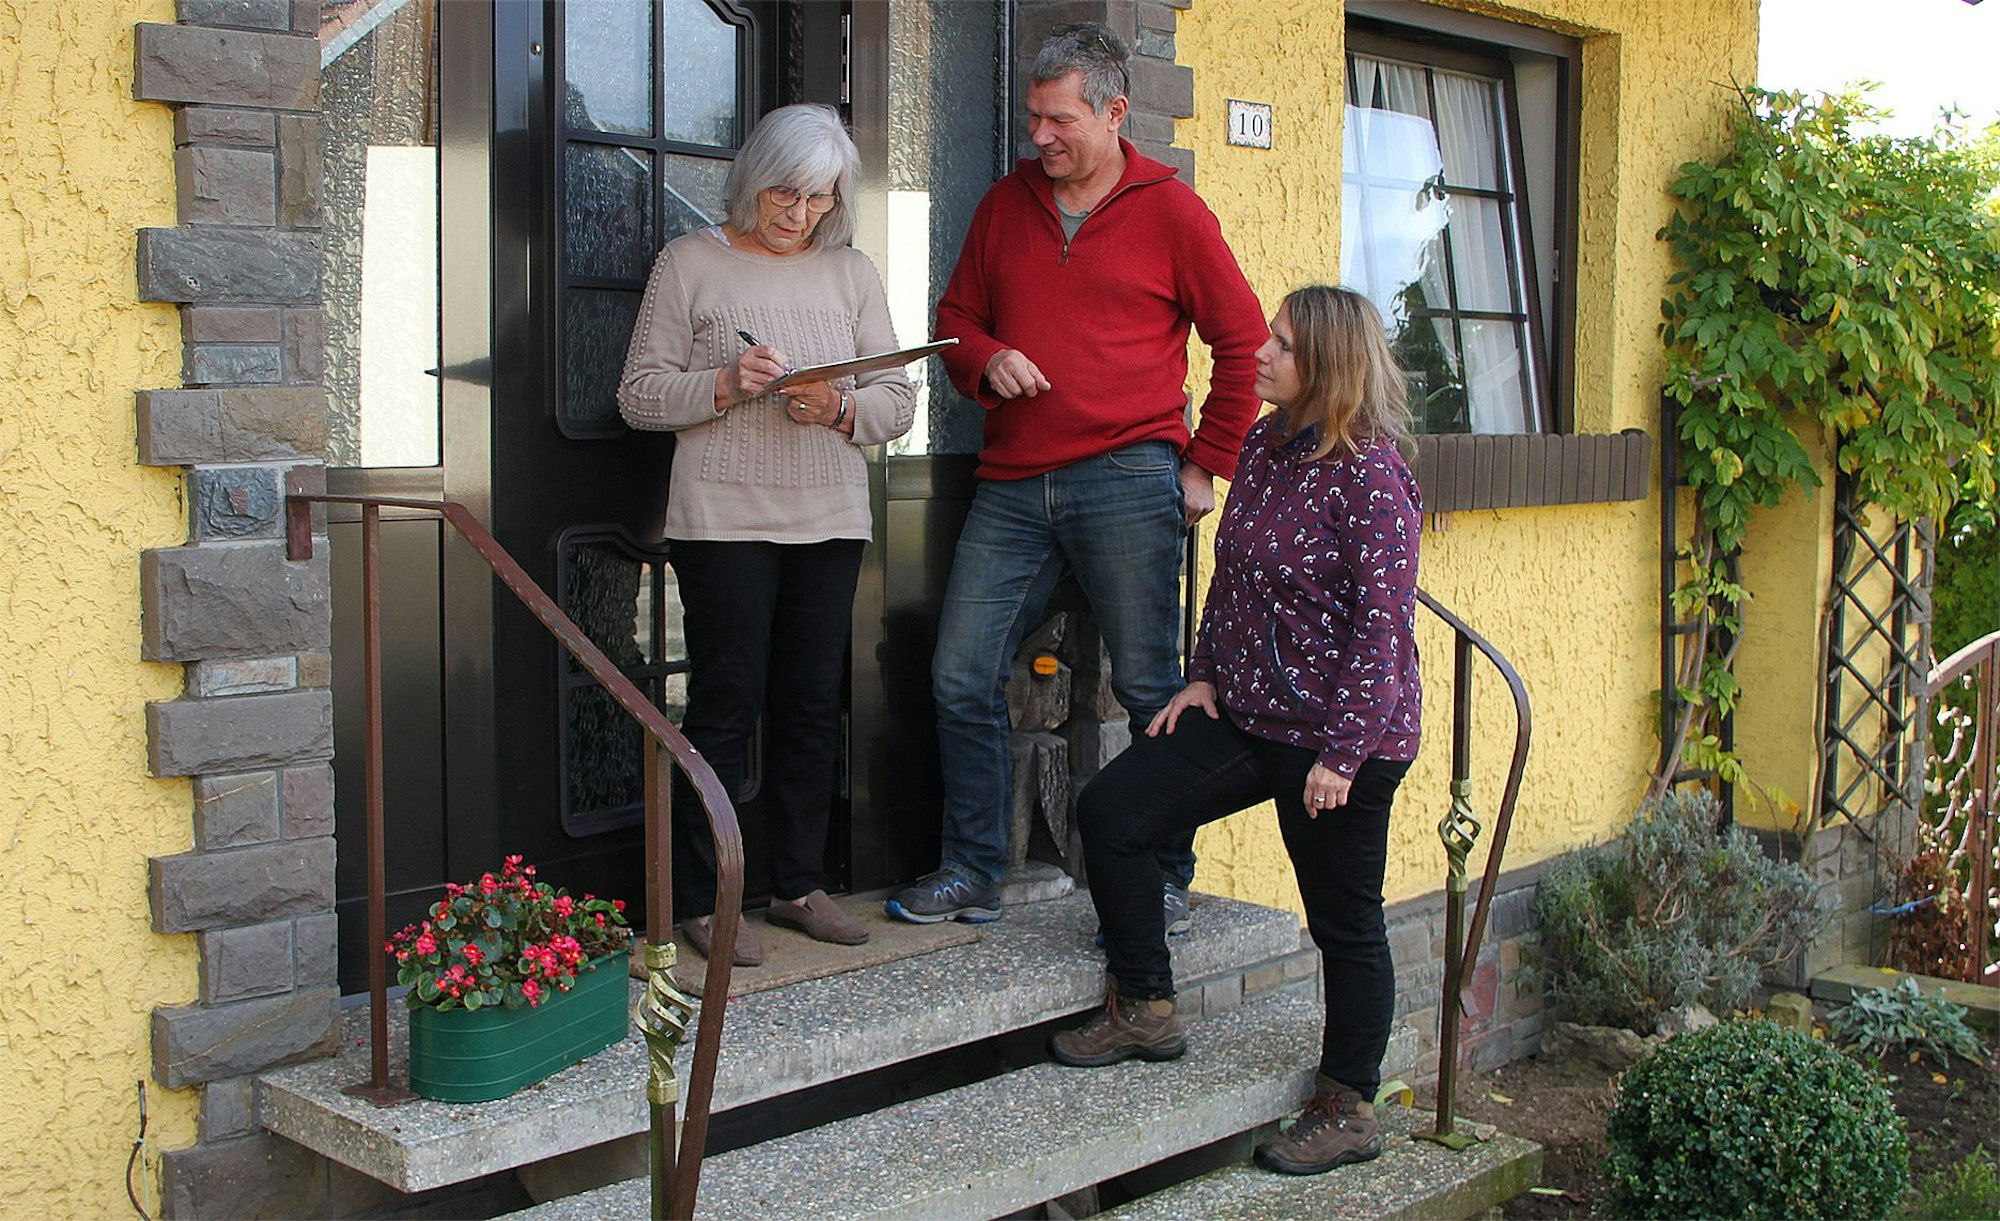 Drei Personen stehen im Eingang eines gelben Hauses, eine Frau unterschreibt auf einem Klemmbrett.